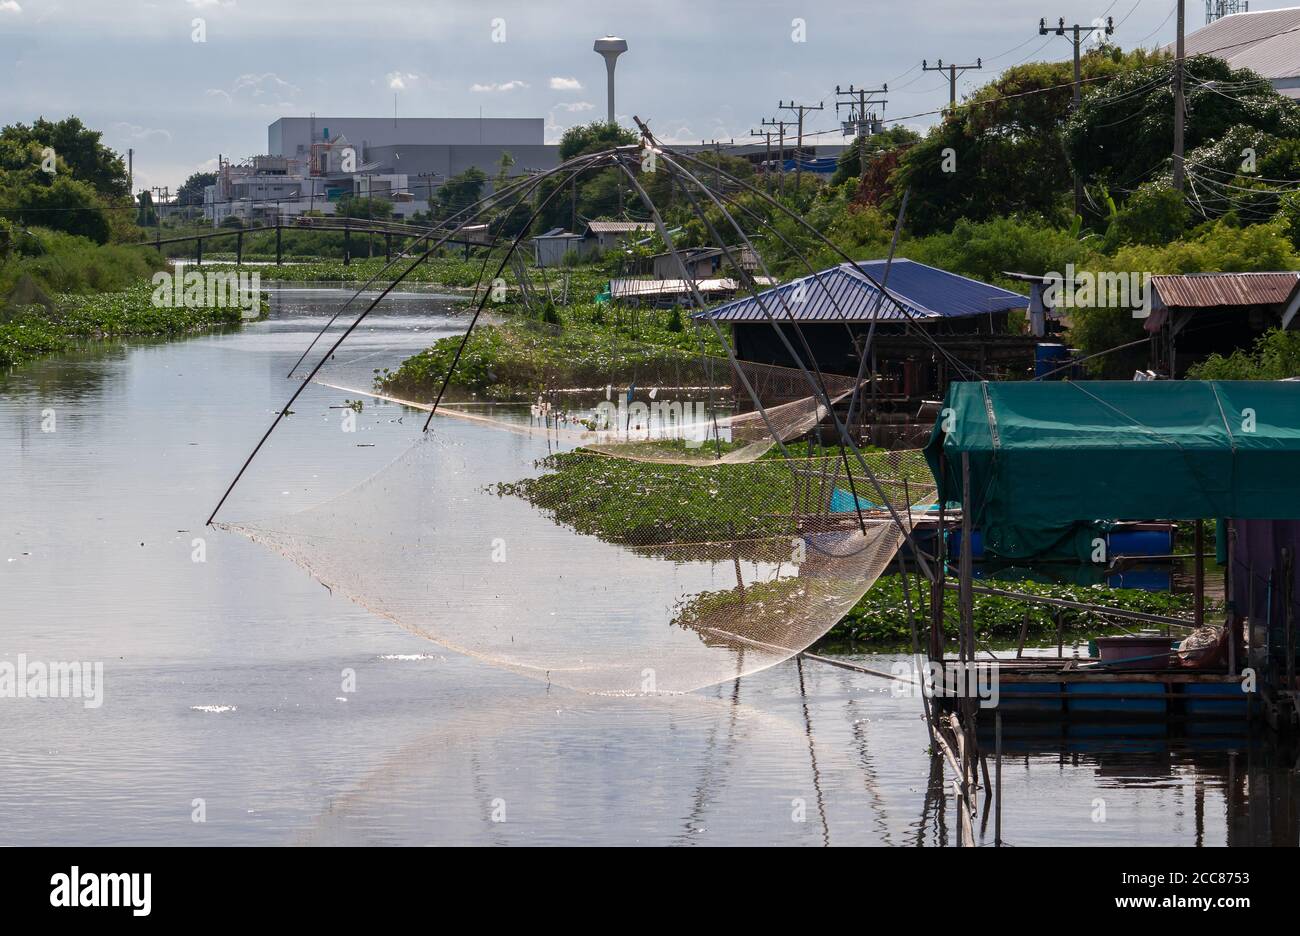 Canale in un'area fortemente industrializzata nel distretto di Bangsaothong, nella provincia di Samut Prakan in Thailandia. Anche nelle zone industrializzate della Thailandia, cana Foto Stock